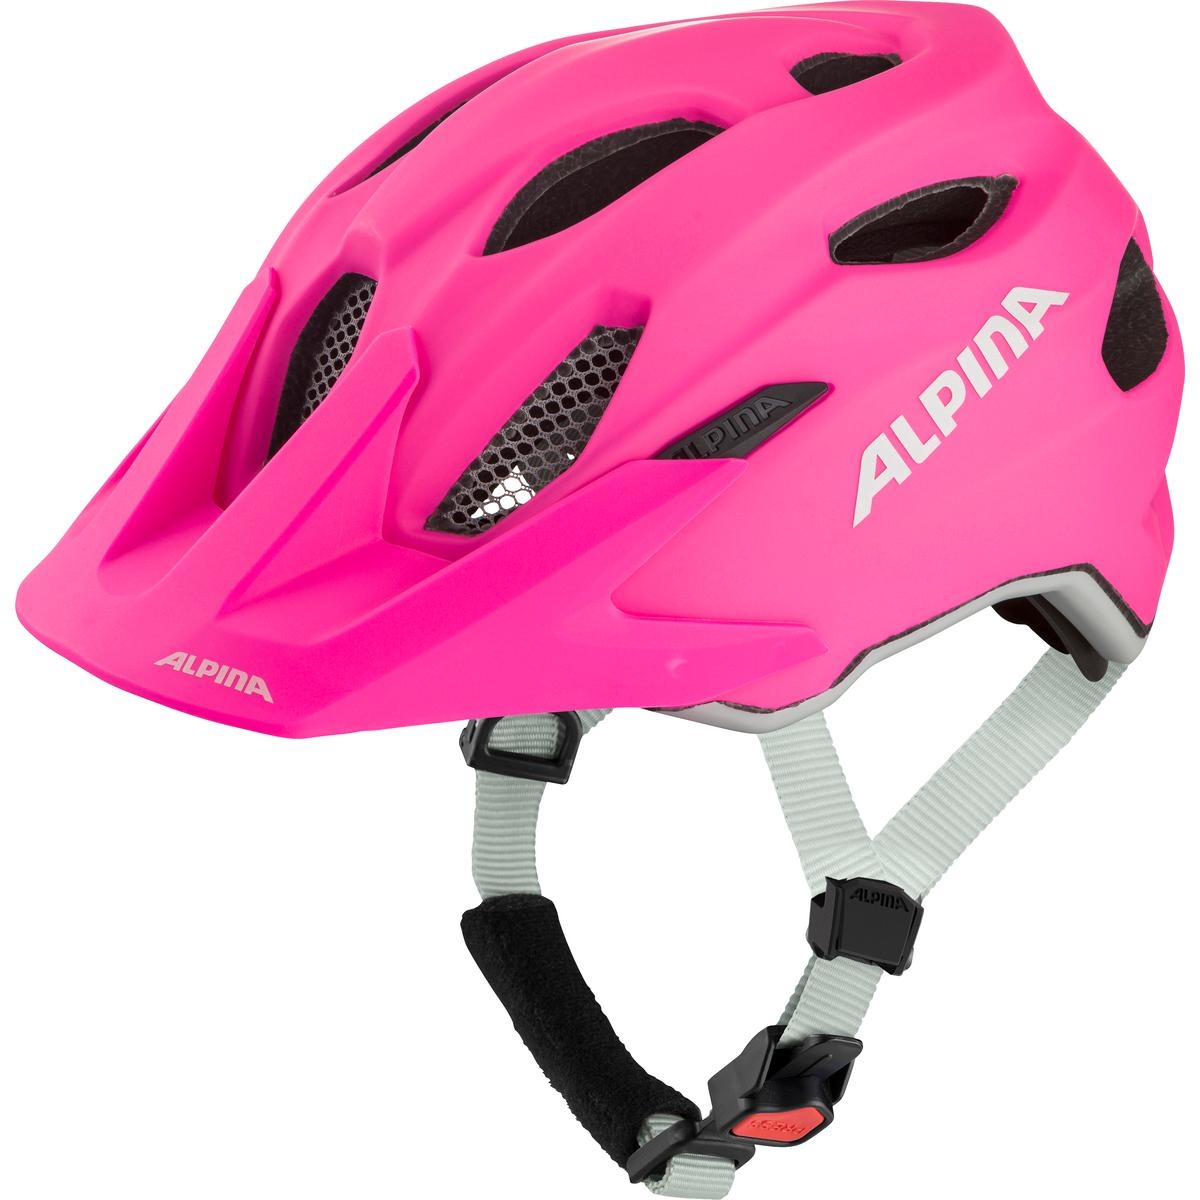 Produktbild von Alpina Carapax JR. Helm Kinder - shocking-pink matt